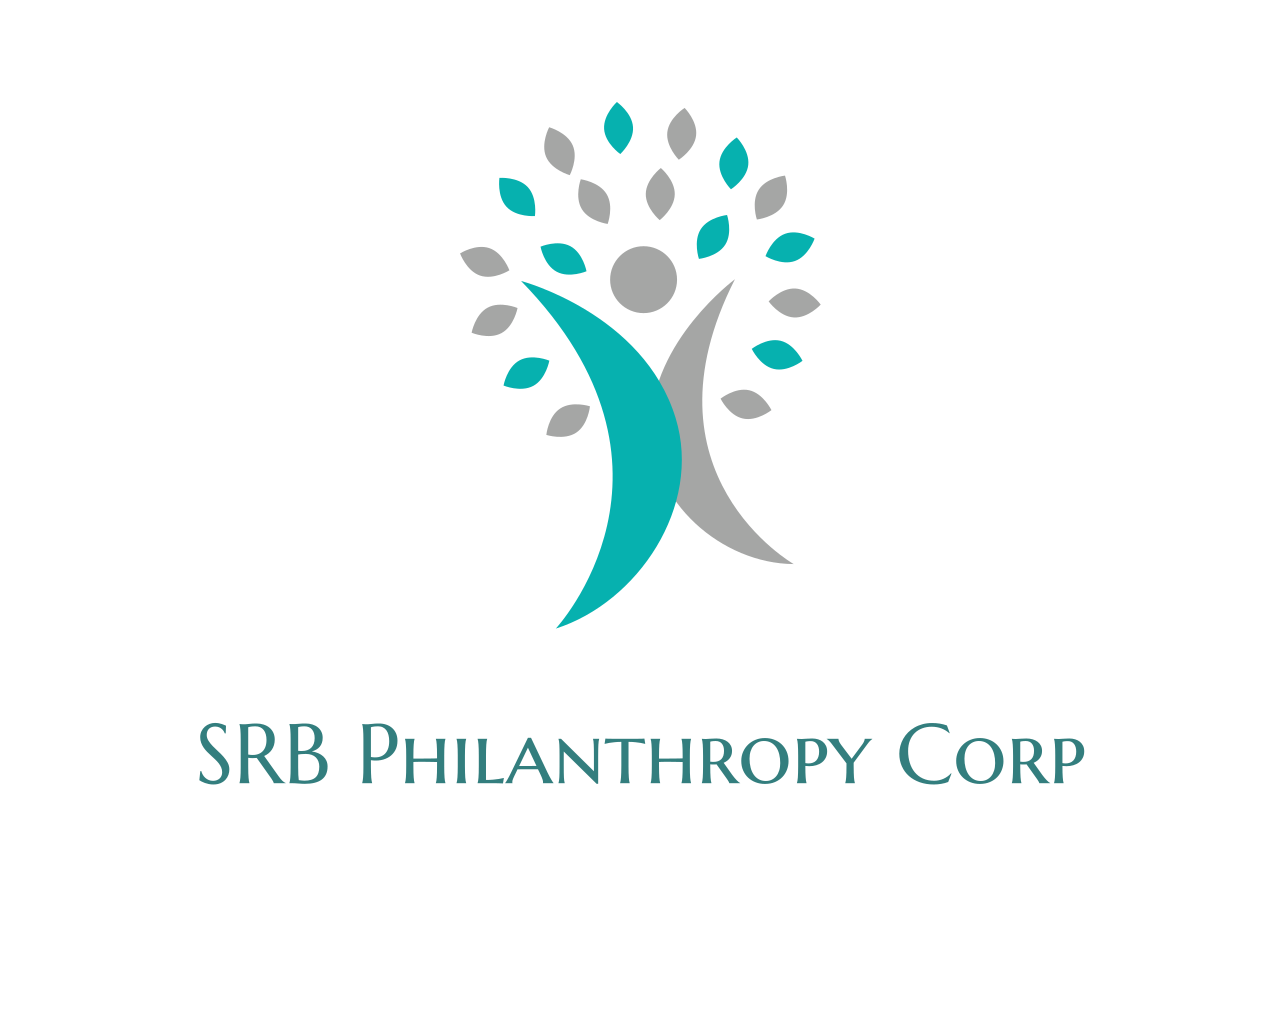 SRB Philanthropy Corp